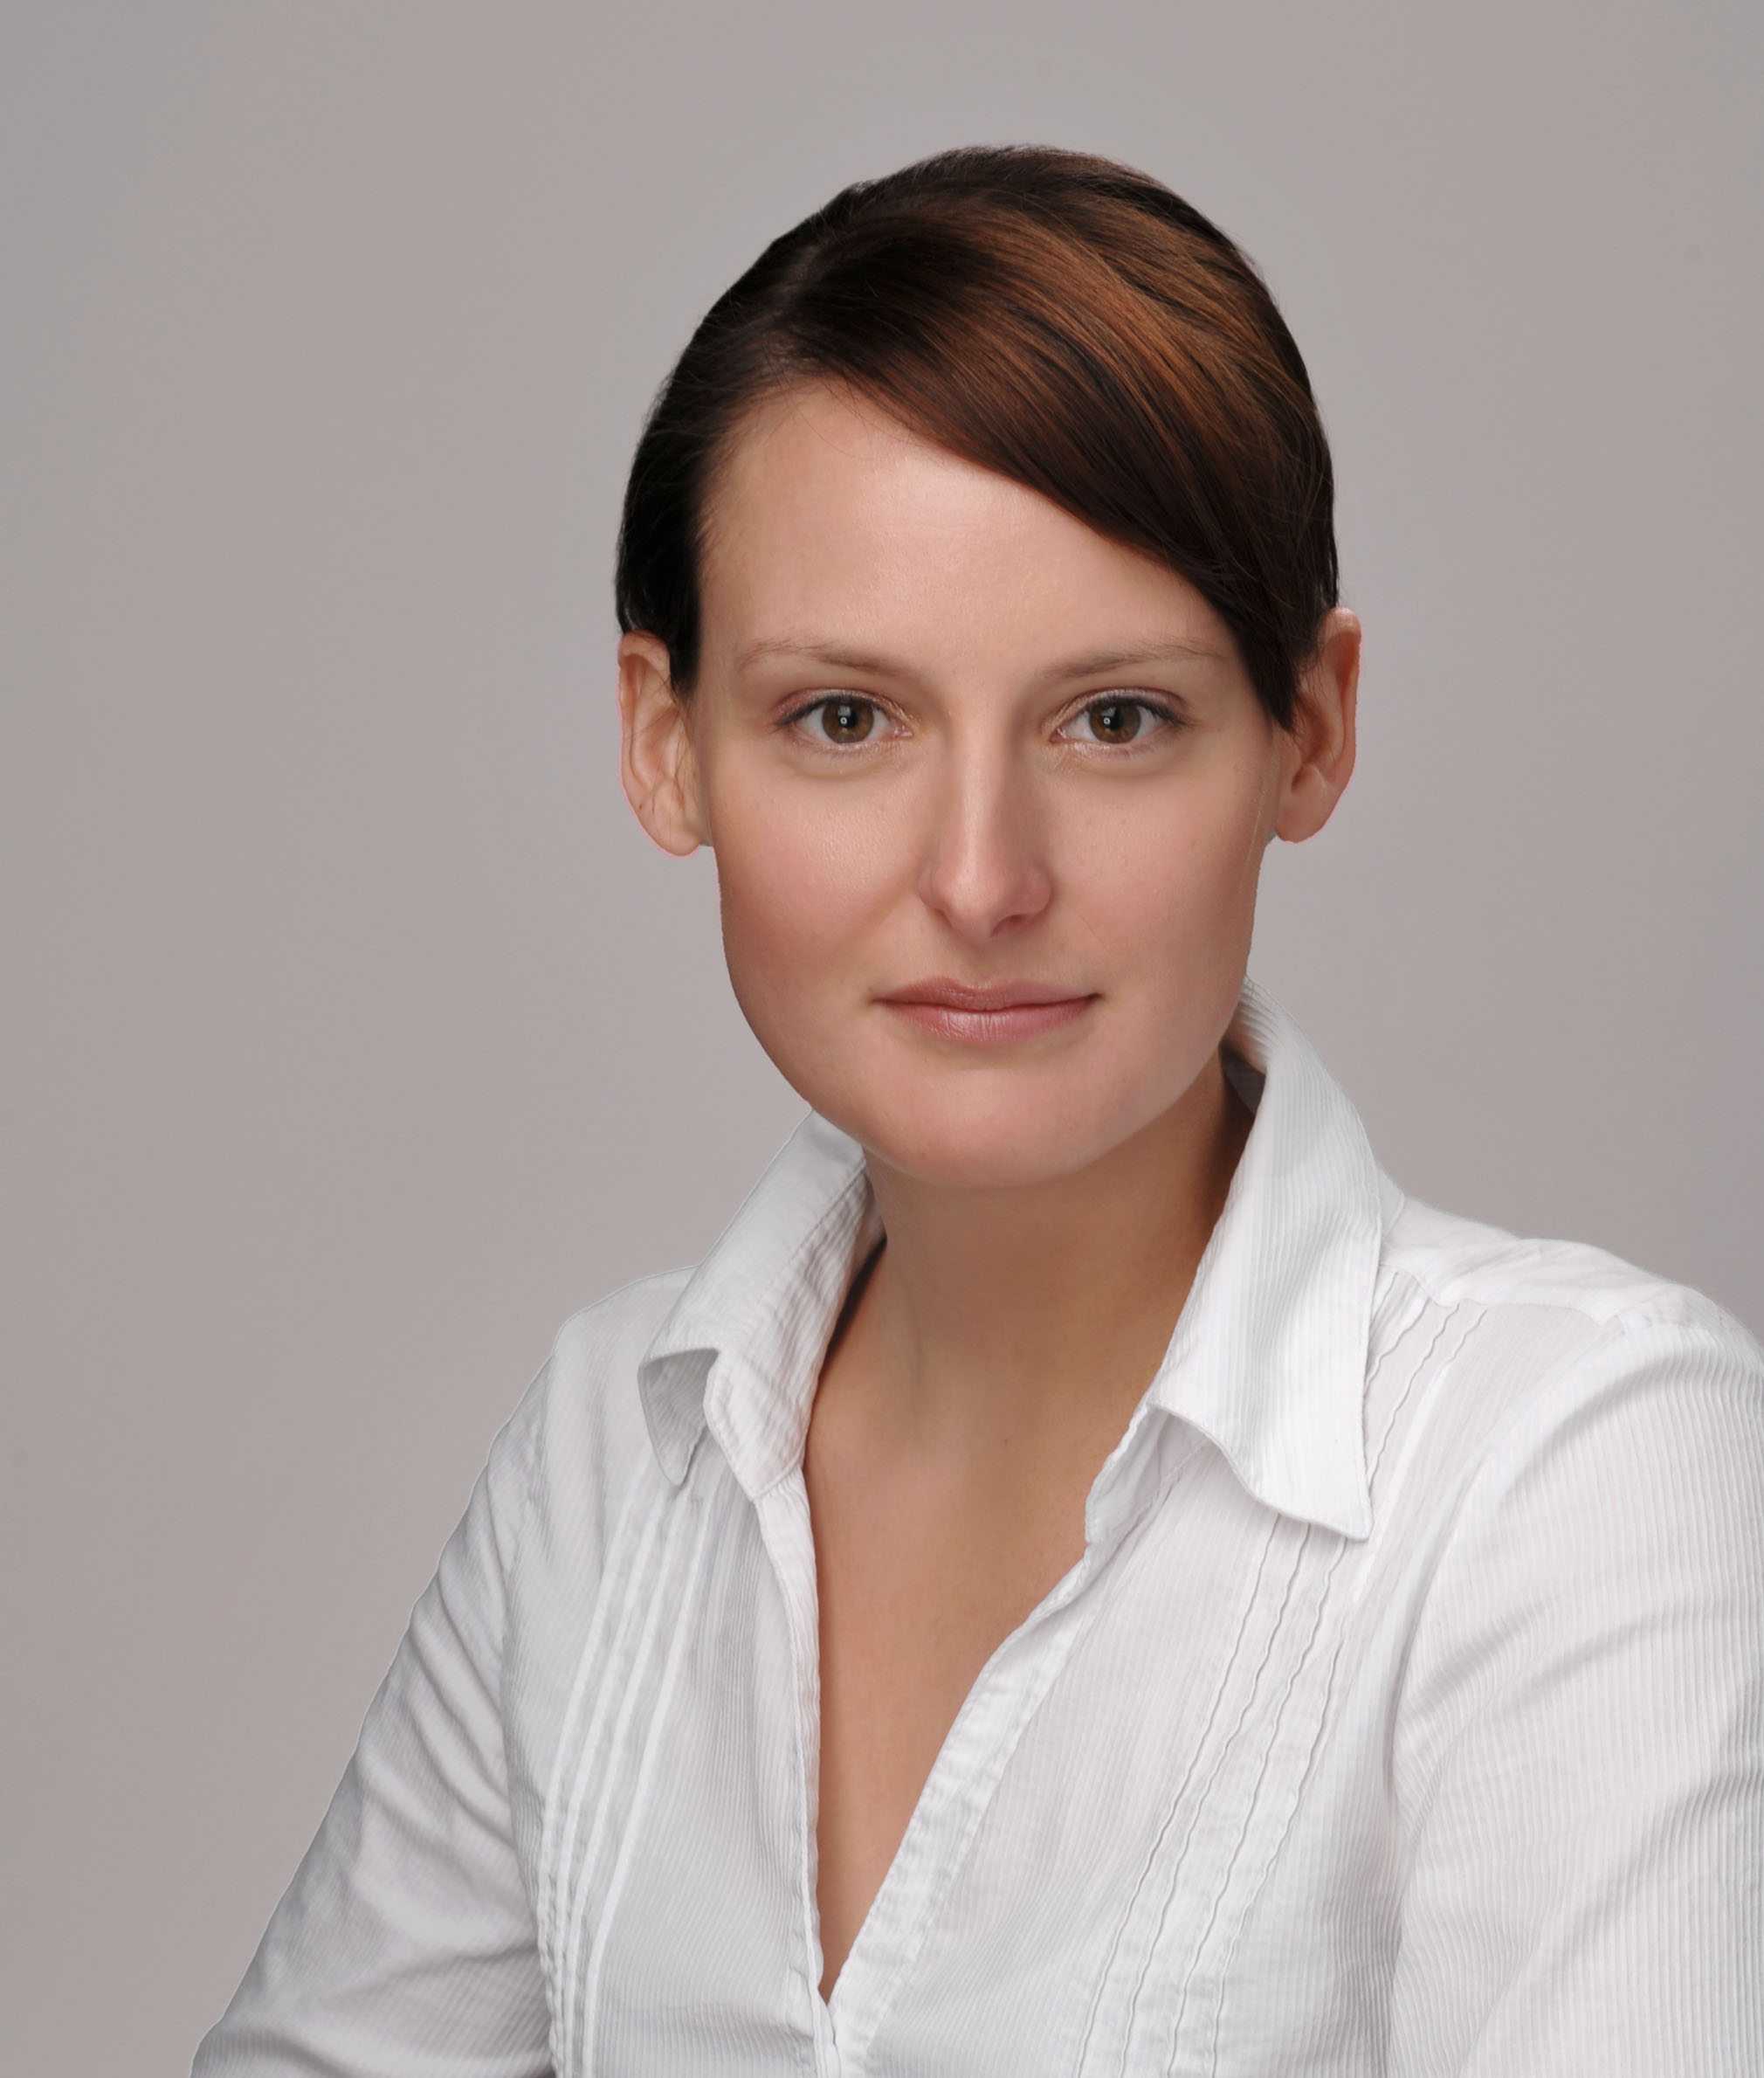 Das Foto zeigt ein Businessbild einer jungen Frau in einem weißem Oberteil vor hellgrauem Hintergrund mit gesunden Hauttönen